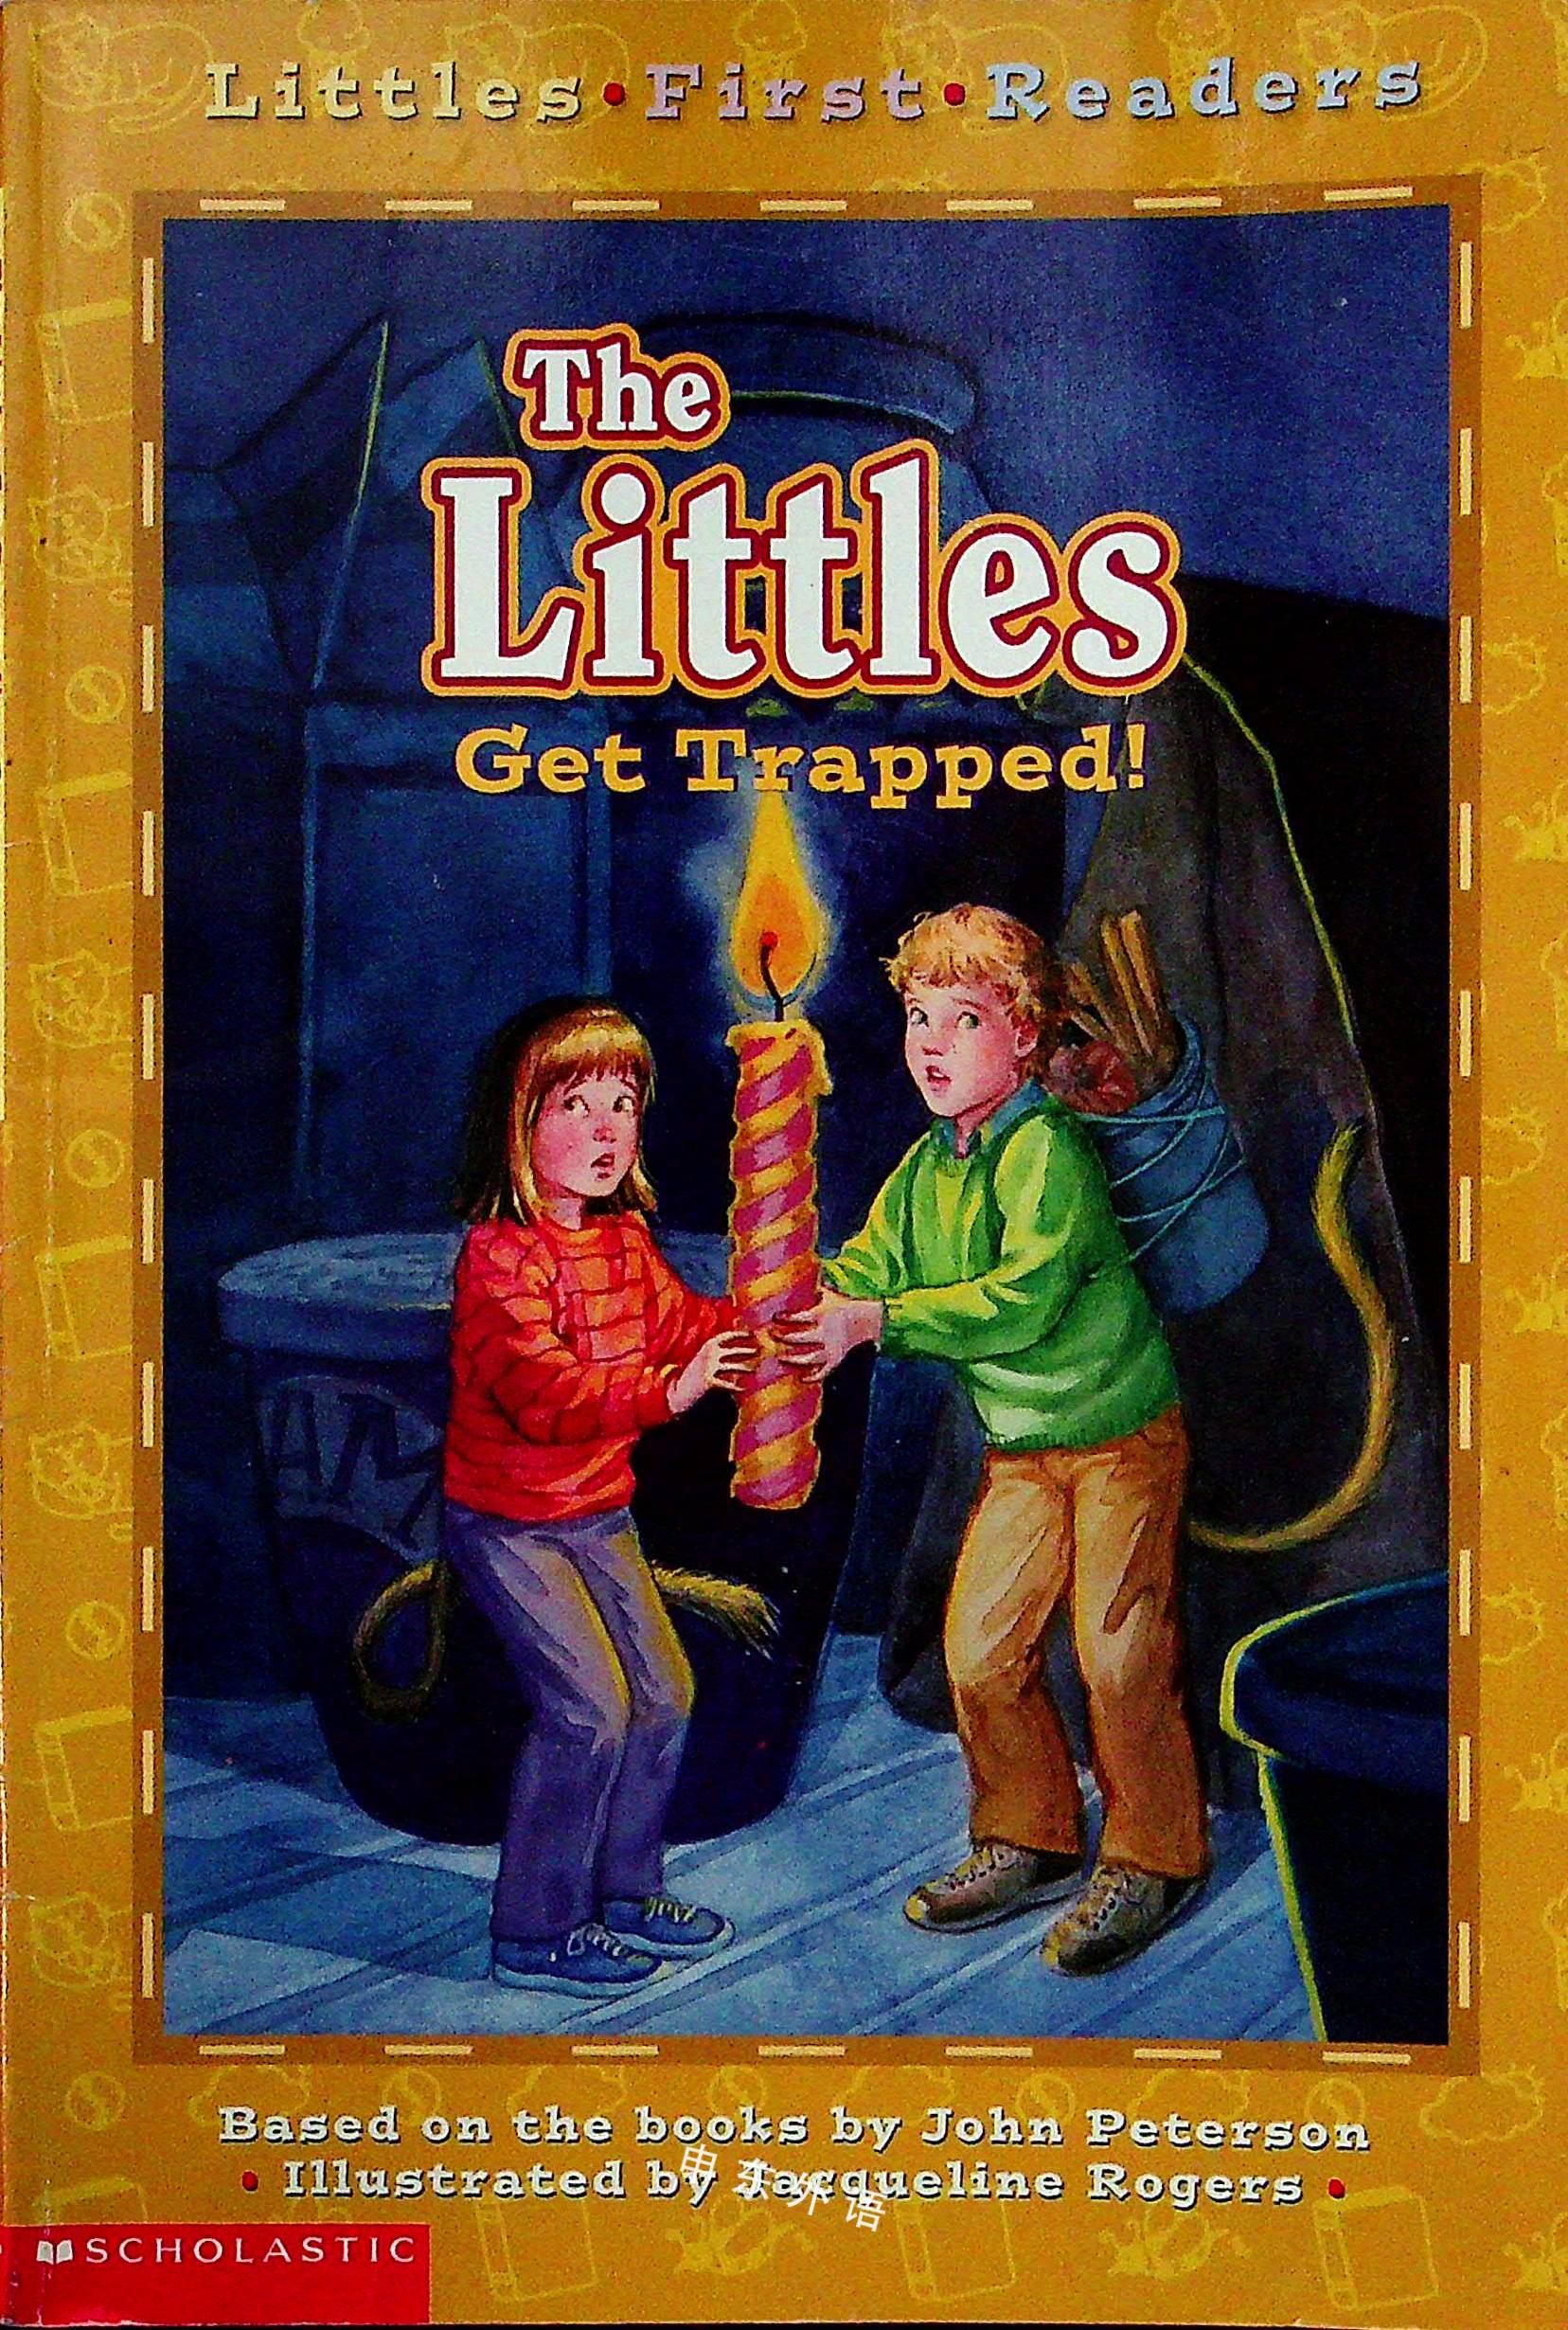 Littles First Readers 04 The Littles Get Trapped 早期的读者系列 儿童图书 进口图书 进口书 原版书 绘本书 英文原版图书 儿童纸板书 外语图书 进口儿童书 原版儿童书